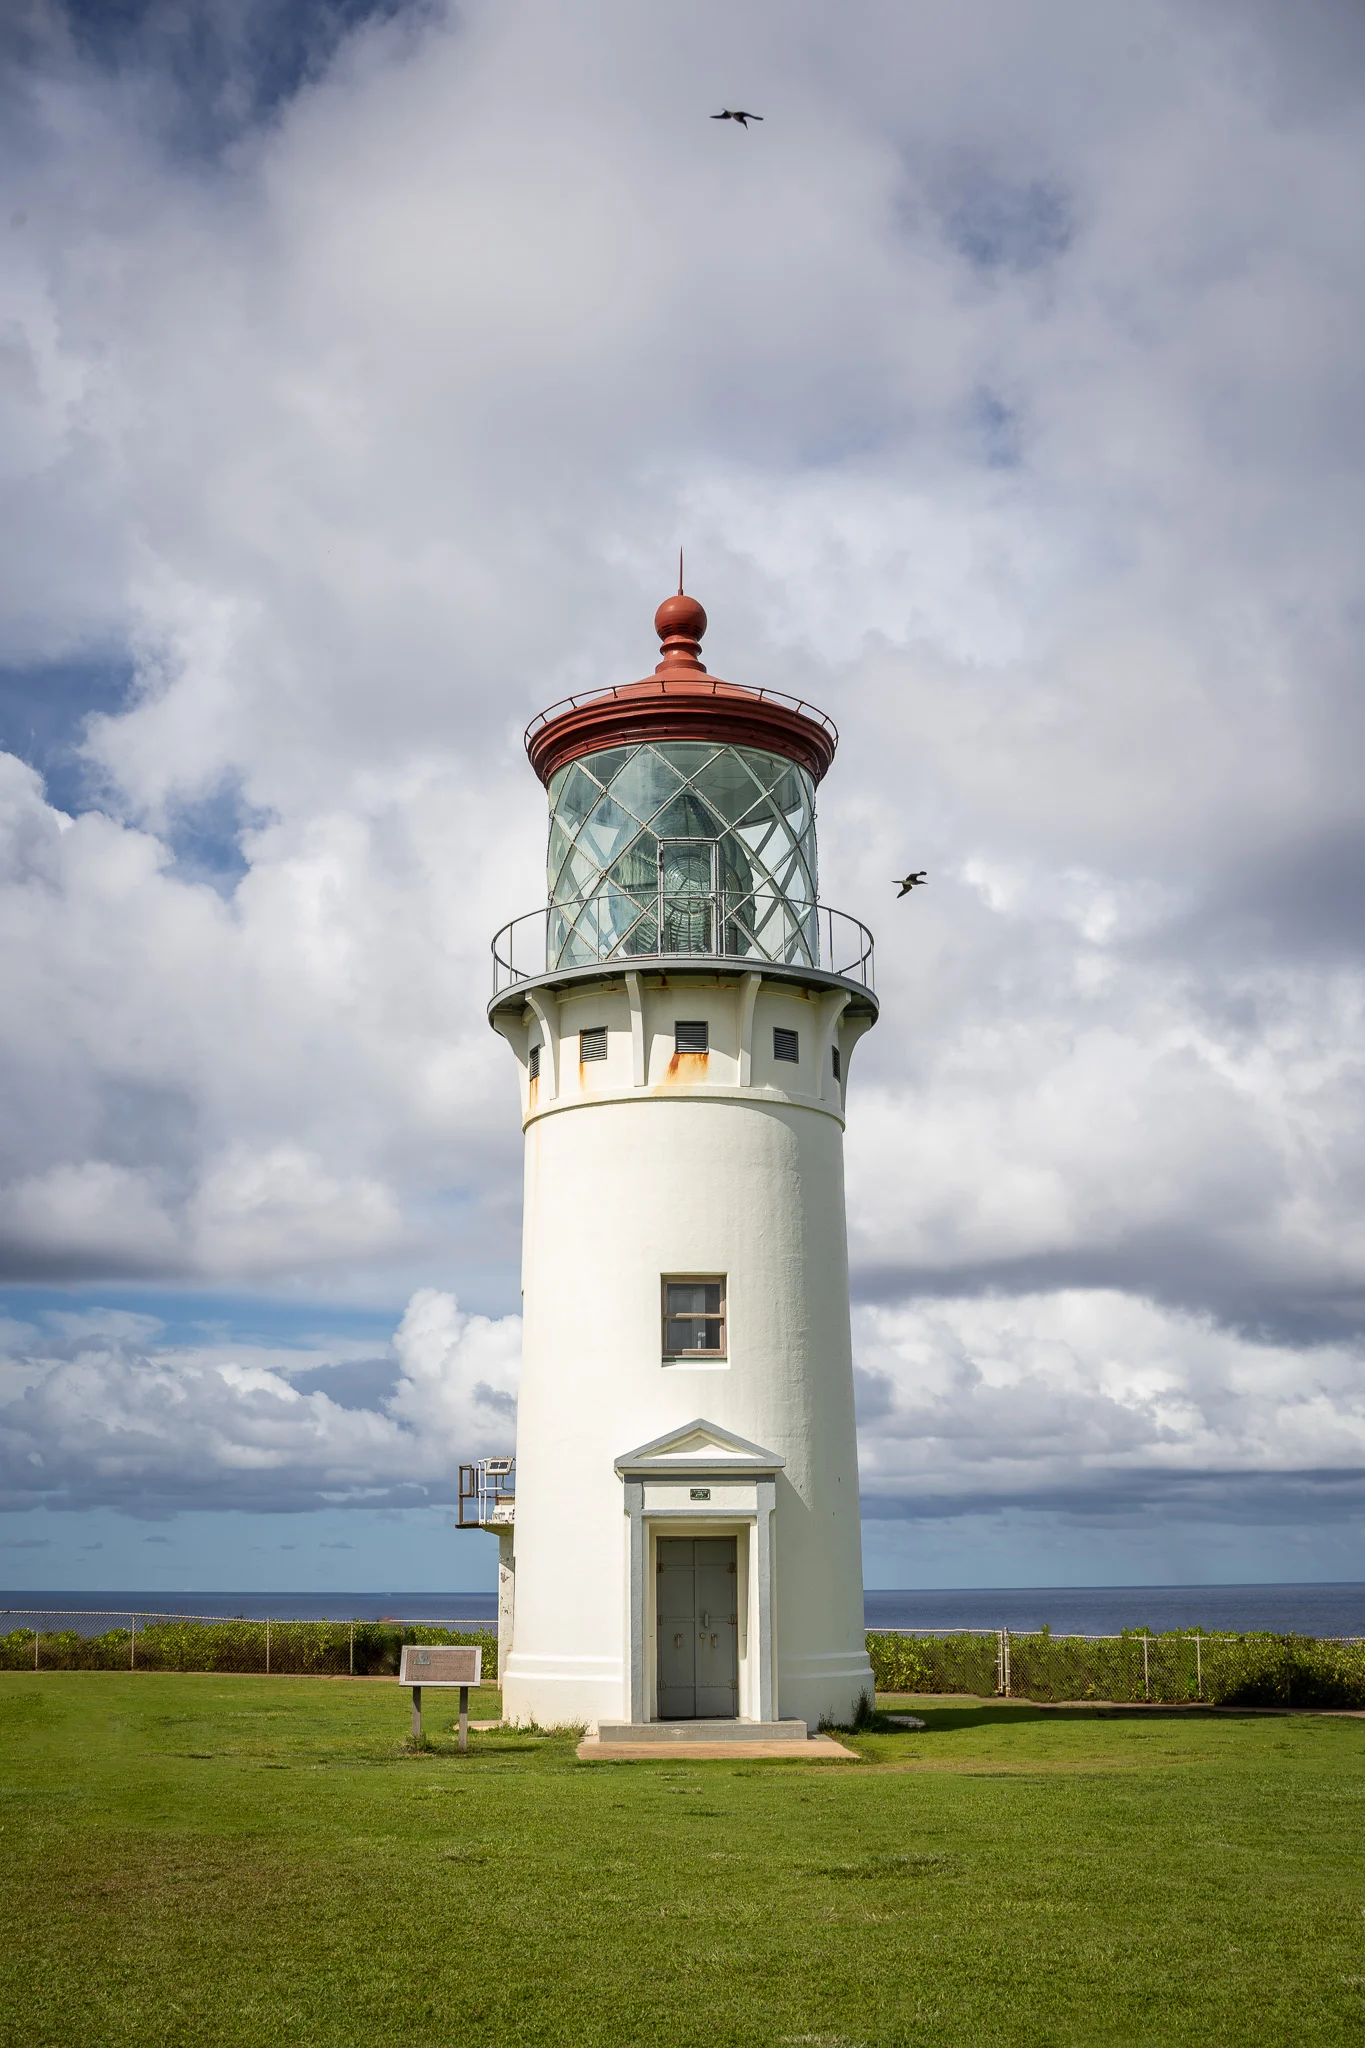 Kilauea Lighthouse Kauai Hawaii